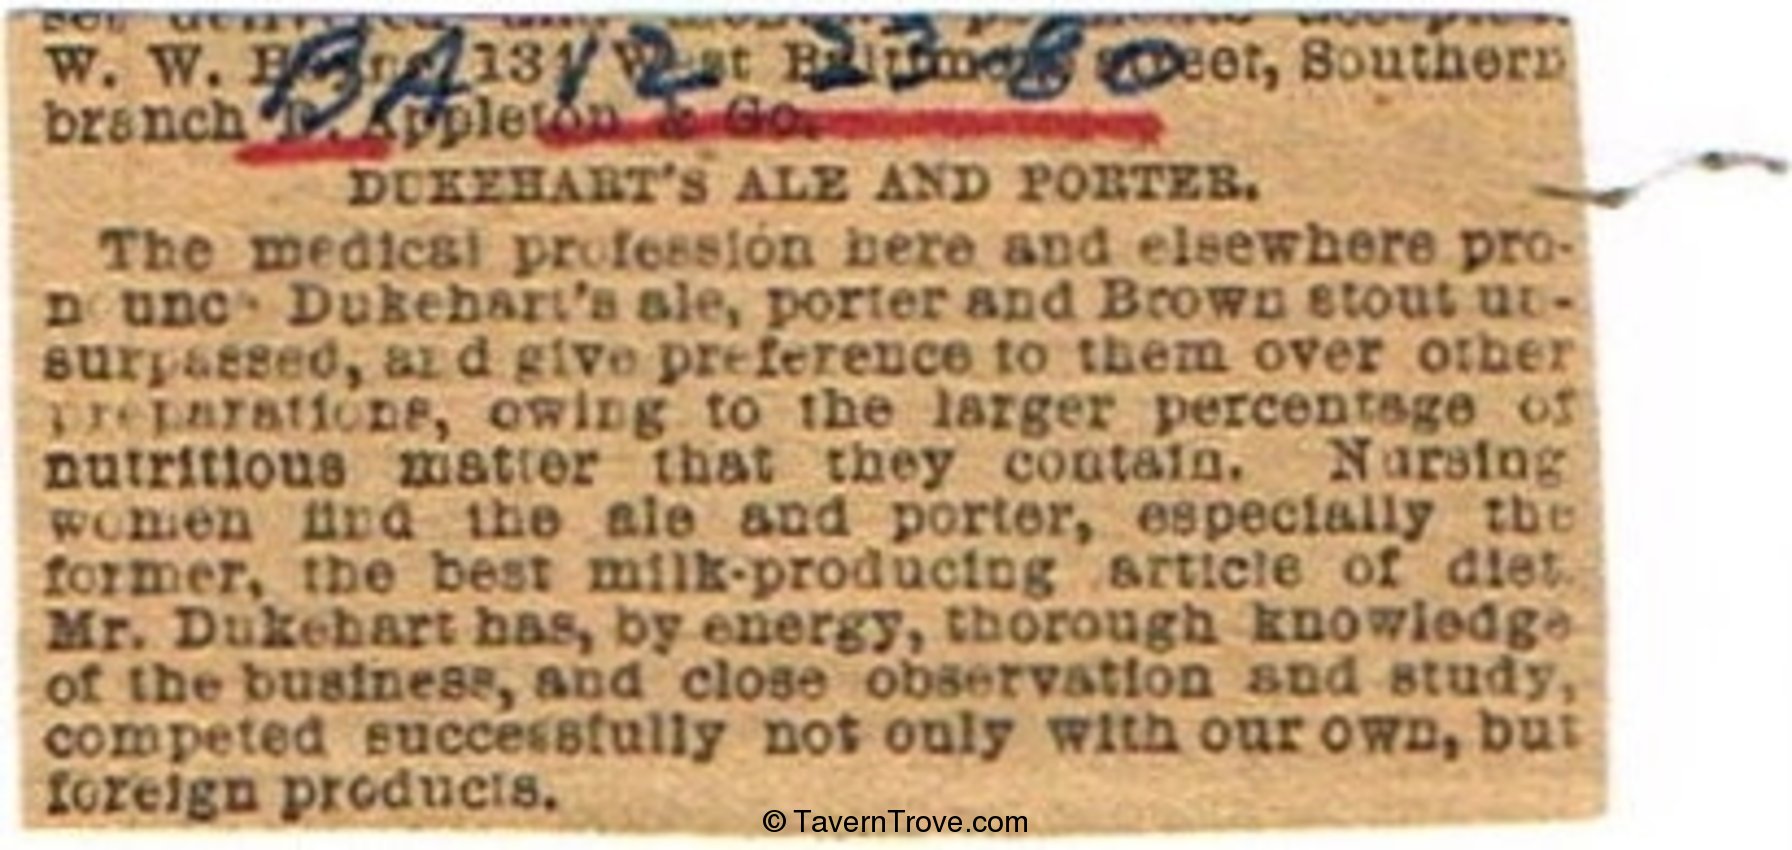 Dukehart's Ale and Porter